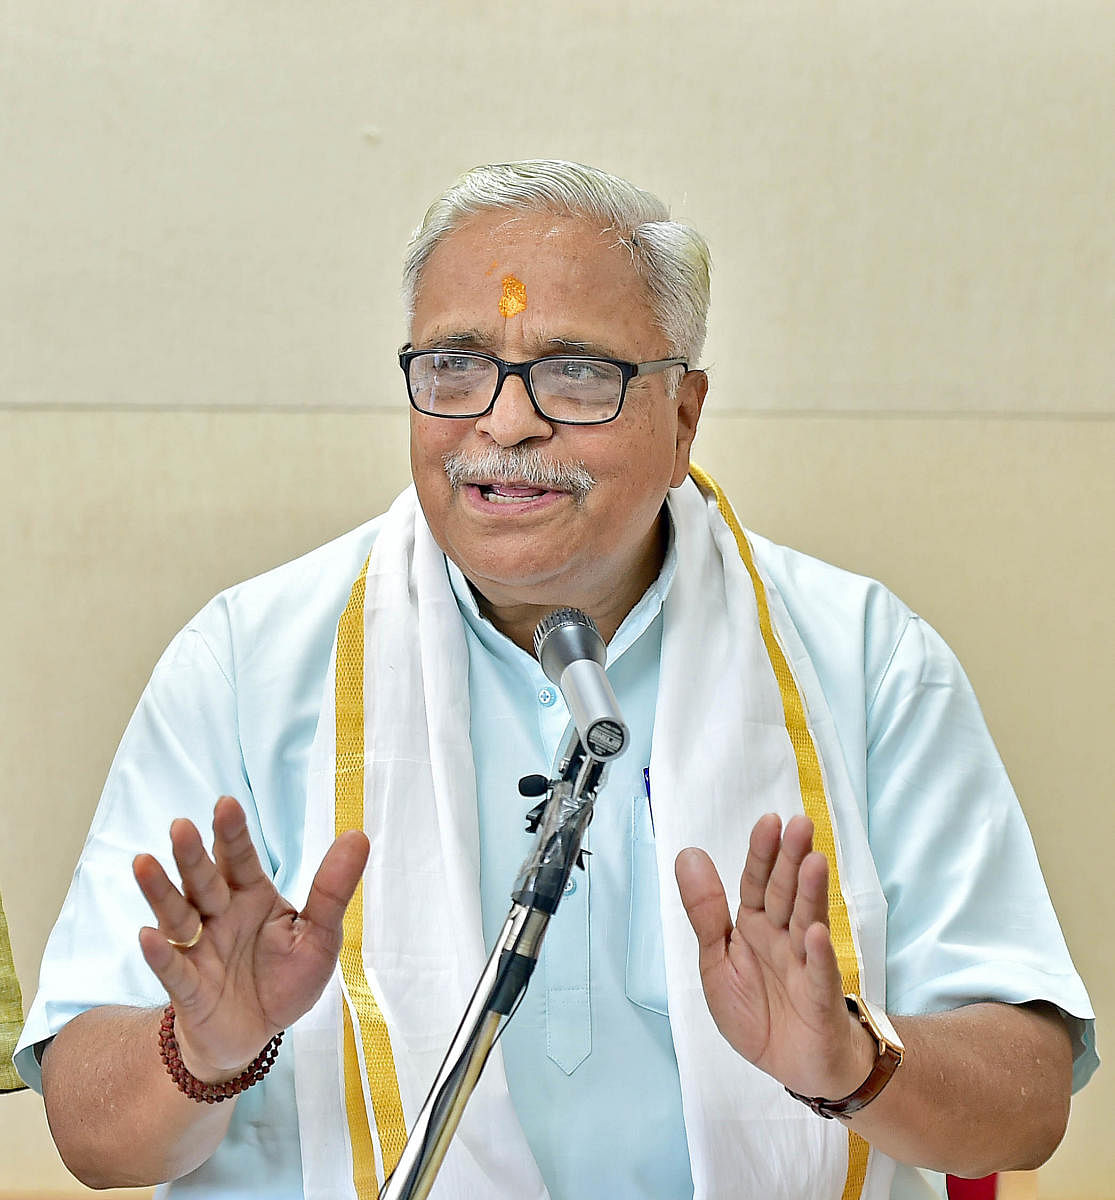 RSS Sarakaryavah (General Secretary) Suresh (Bhaiyyaji) Joshi. Credit: DH Photo